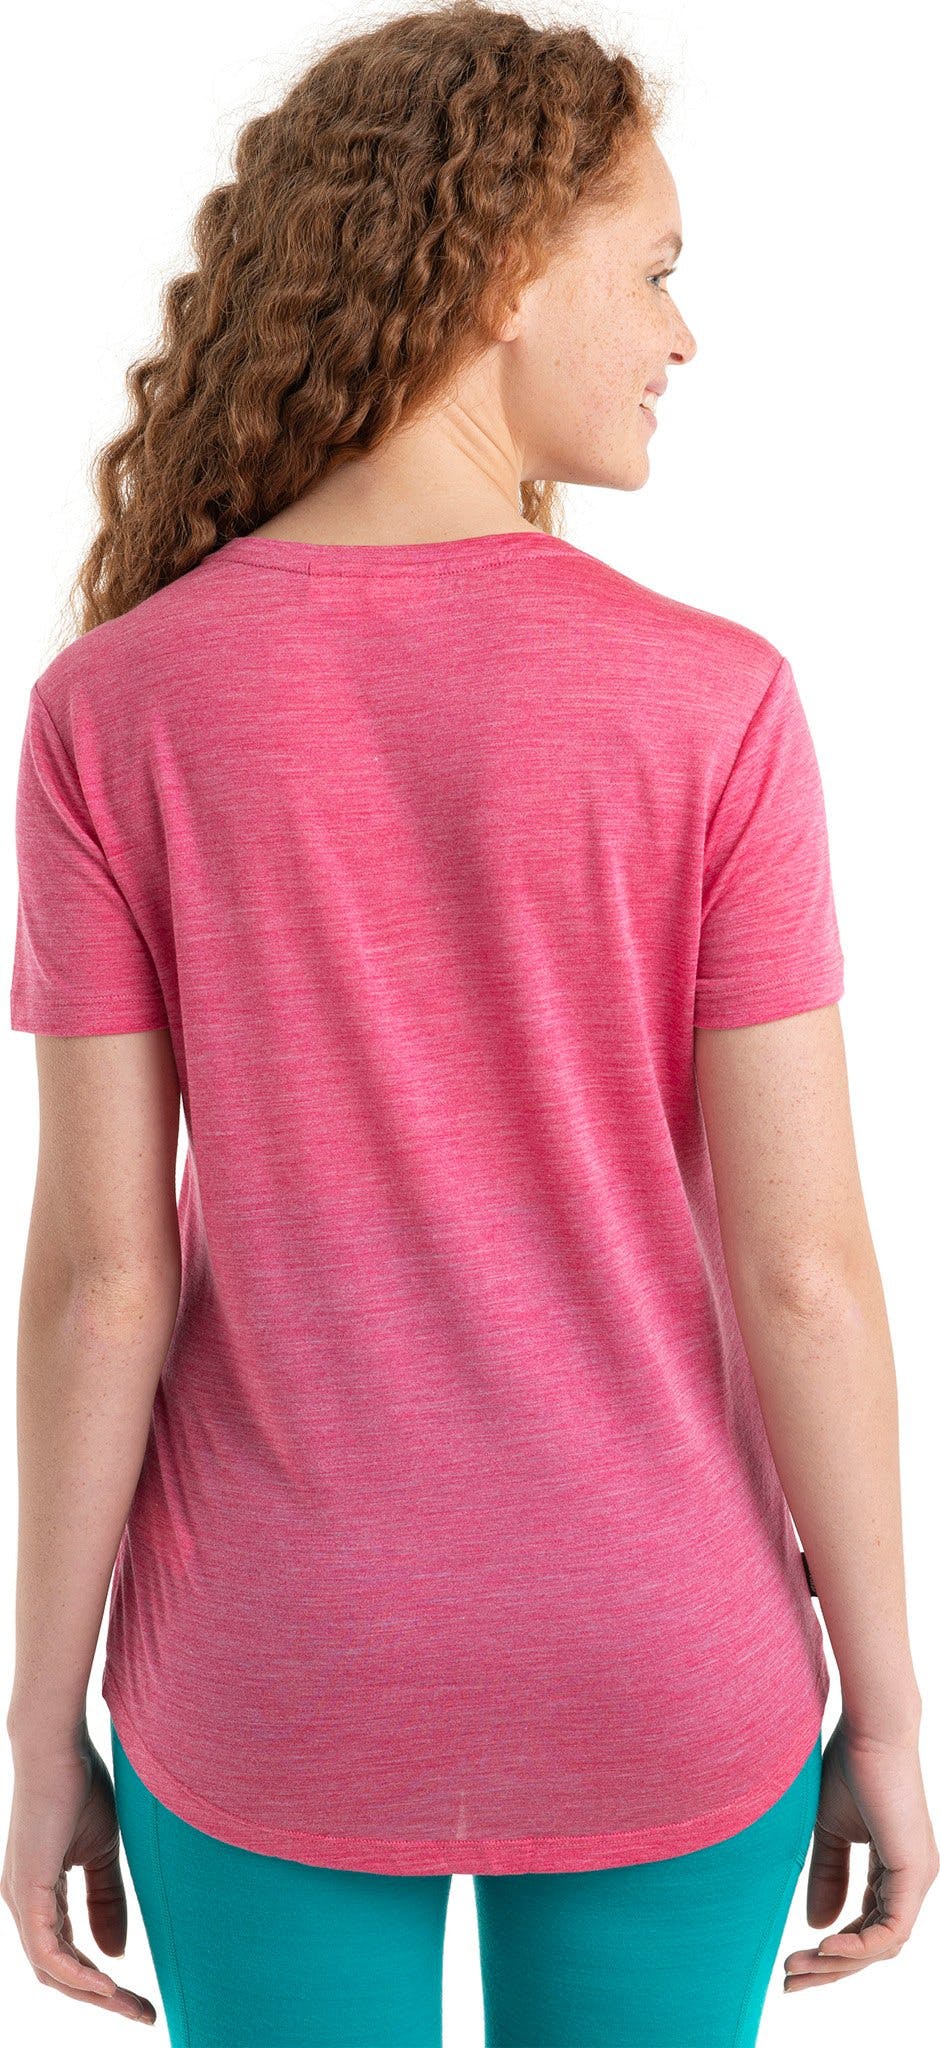 Numéro de l'image de la galerie de produits 2 pour le produit T-shirt à manches courtes en mérinos Peak Quest Sphere II 125 Cool-Lite - Femme